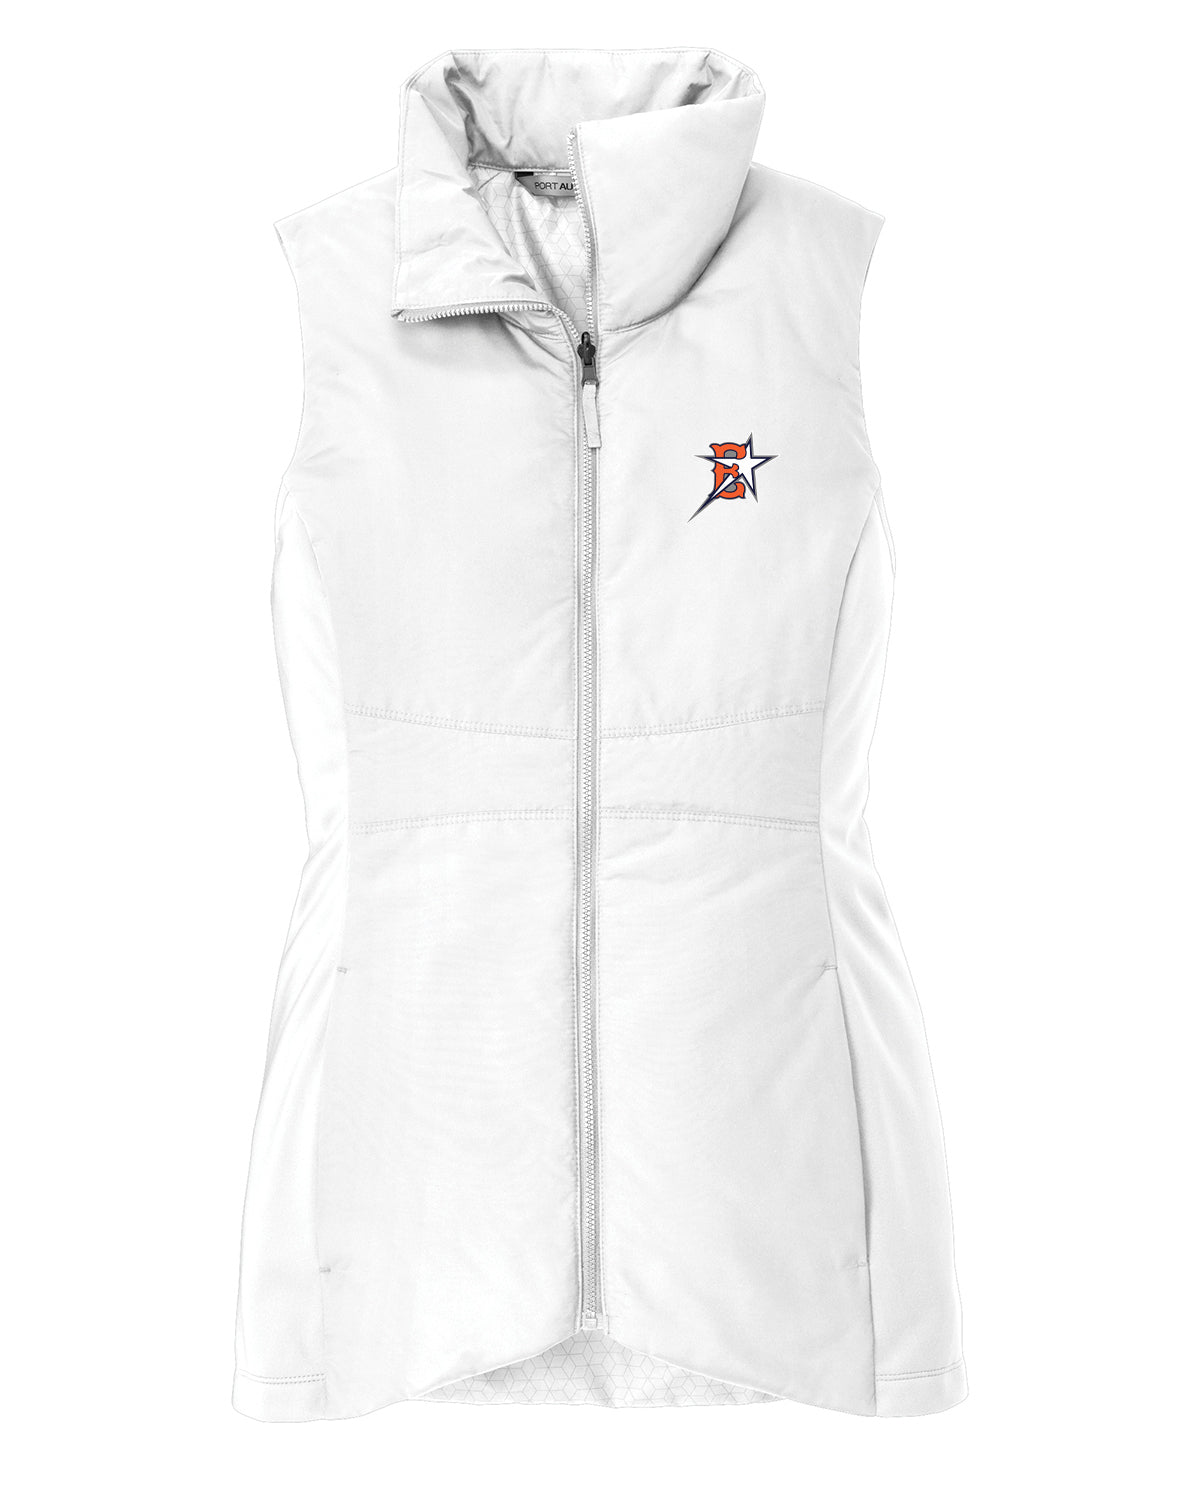 Eastvale Girl's Softball Women's Vest